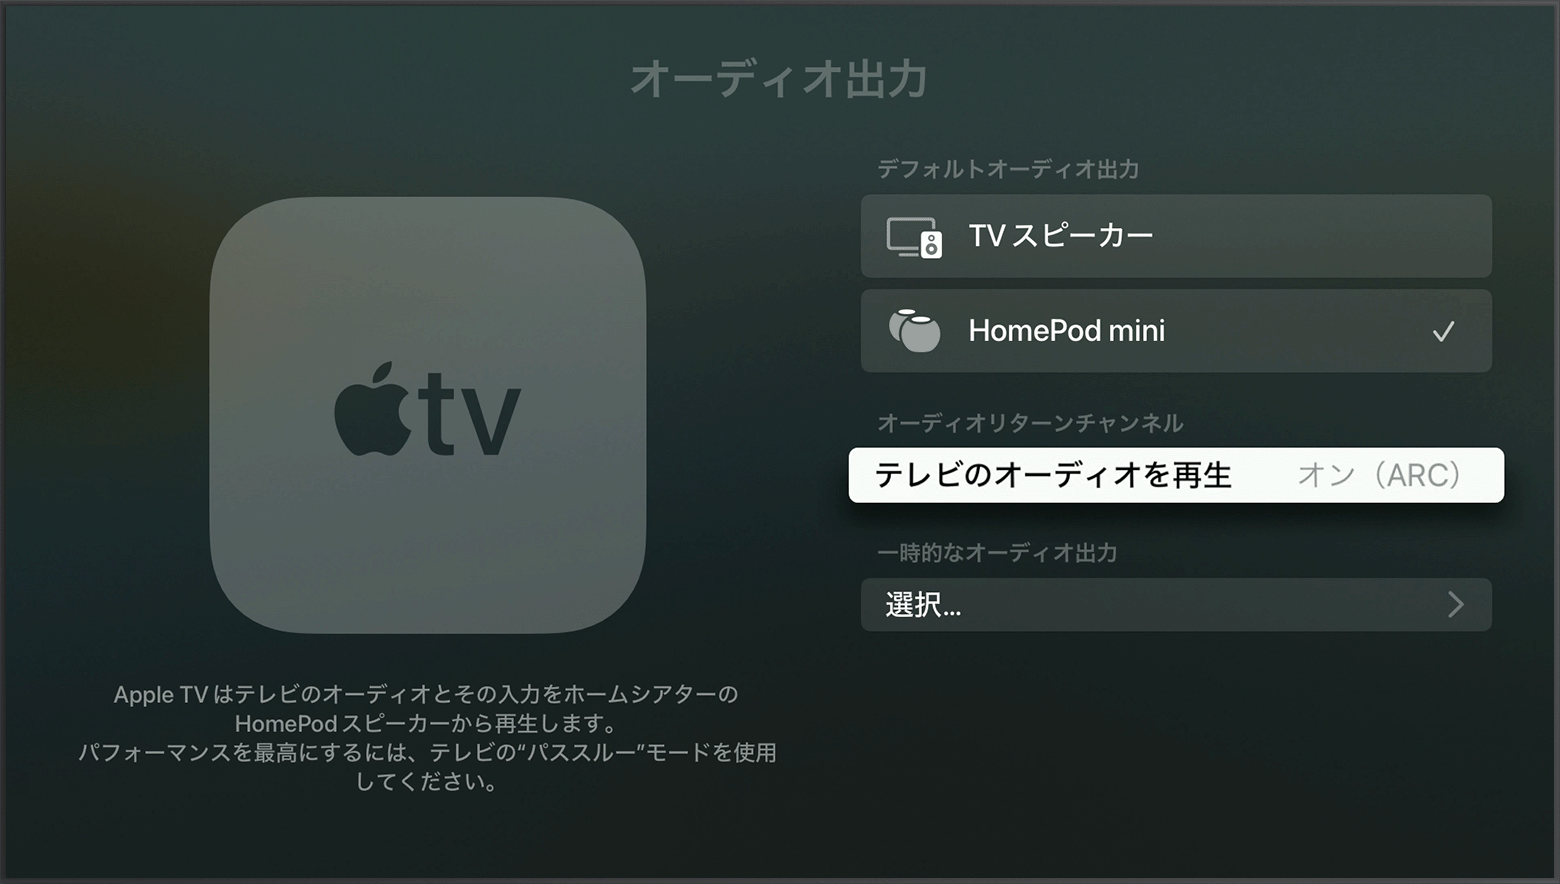 Apple TV 4K で HDMI ARC または eARC を使う - Apple サポート (日本)